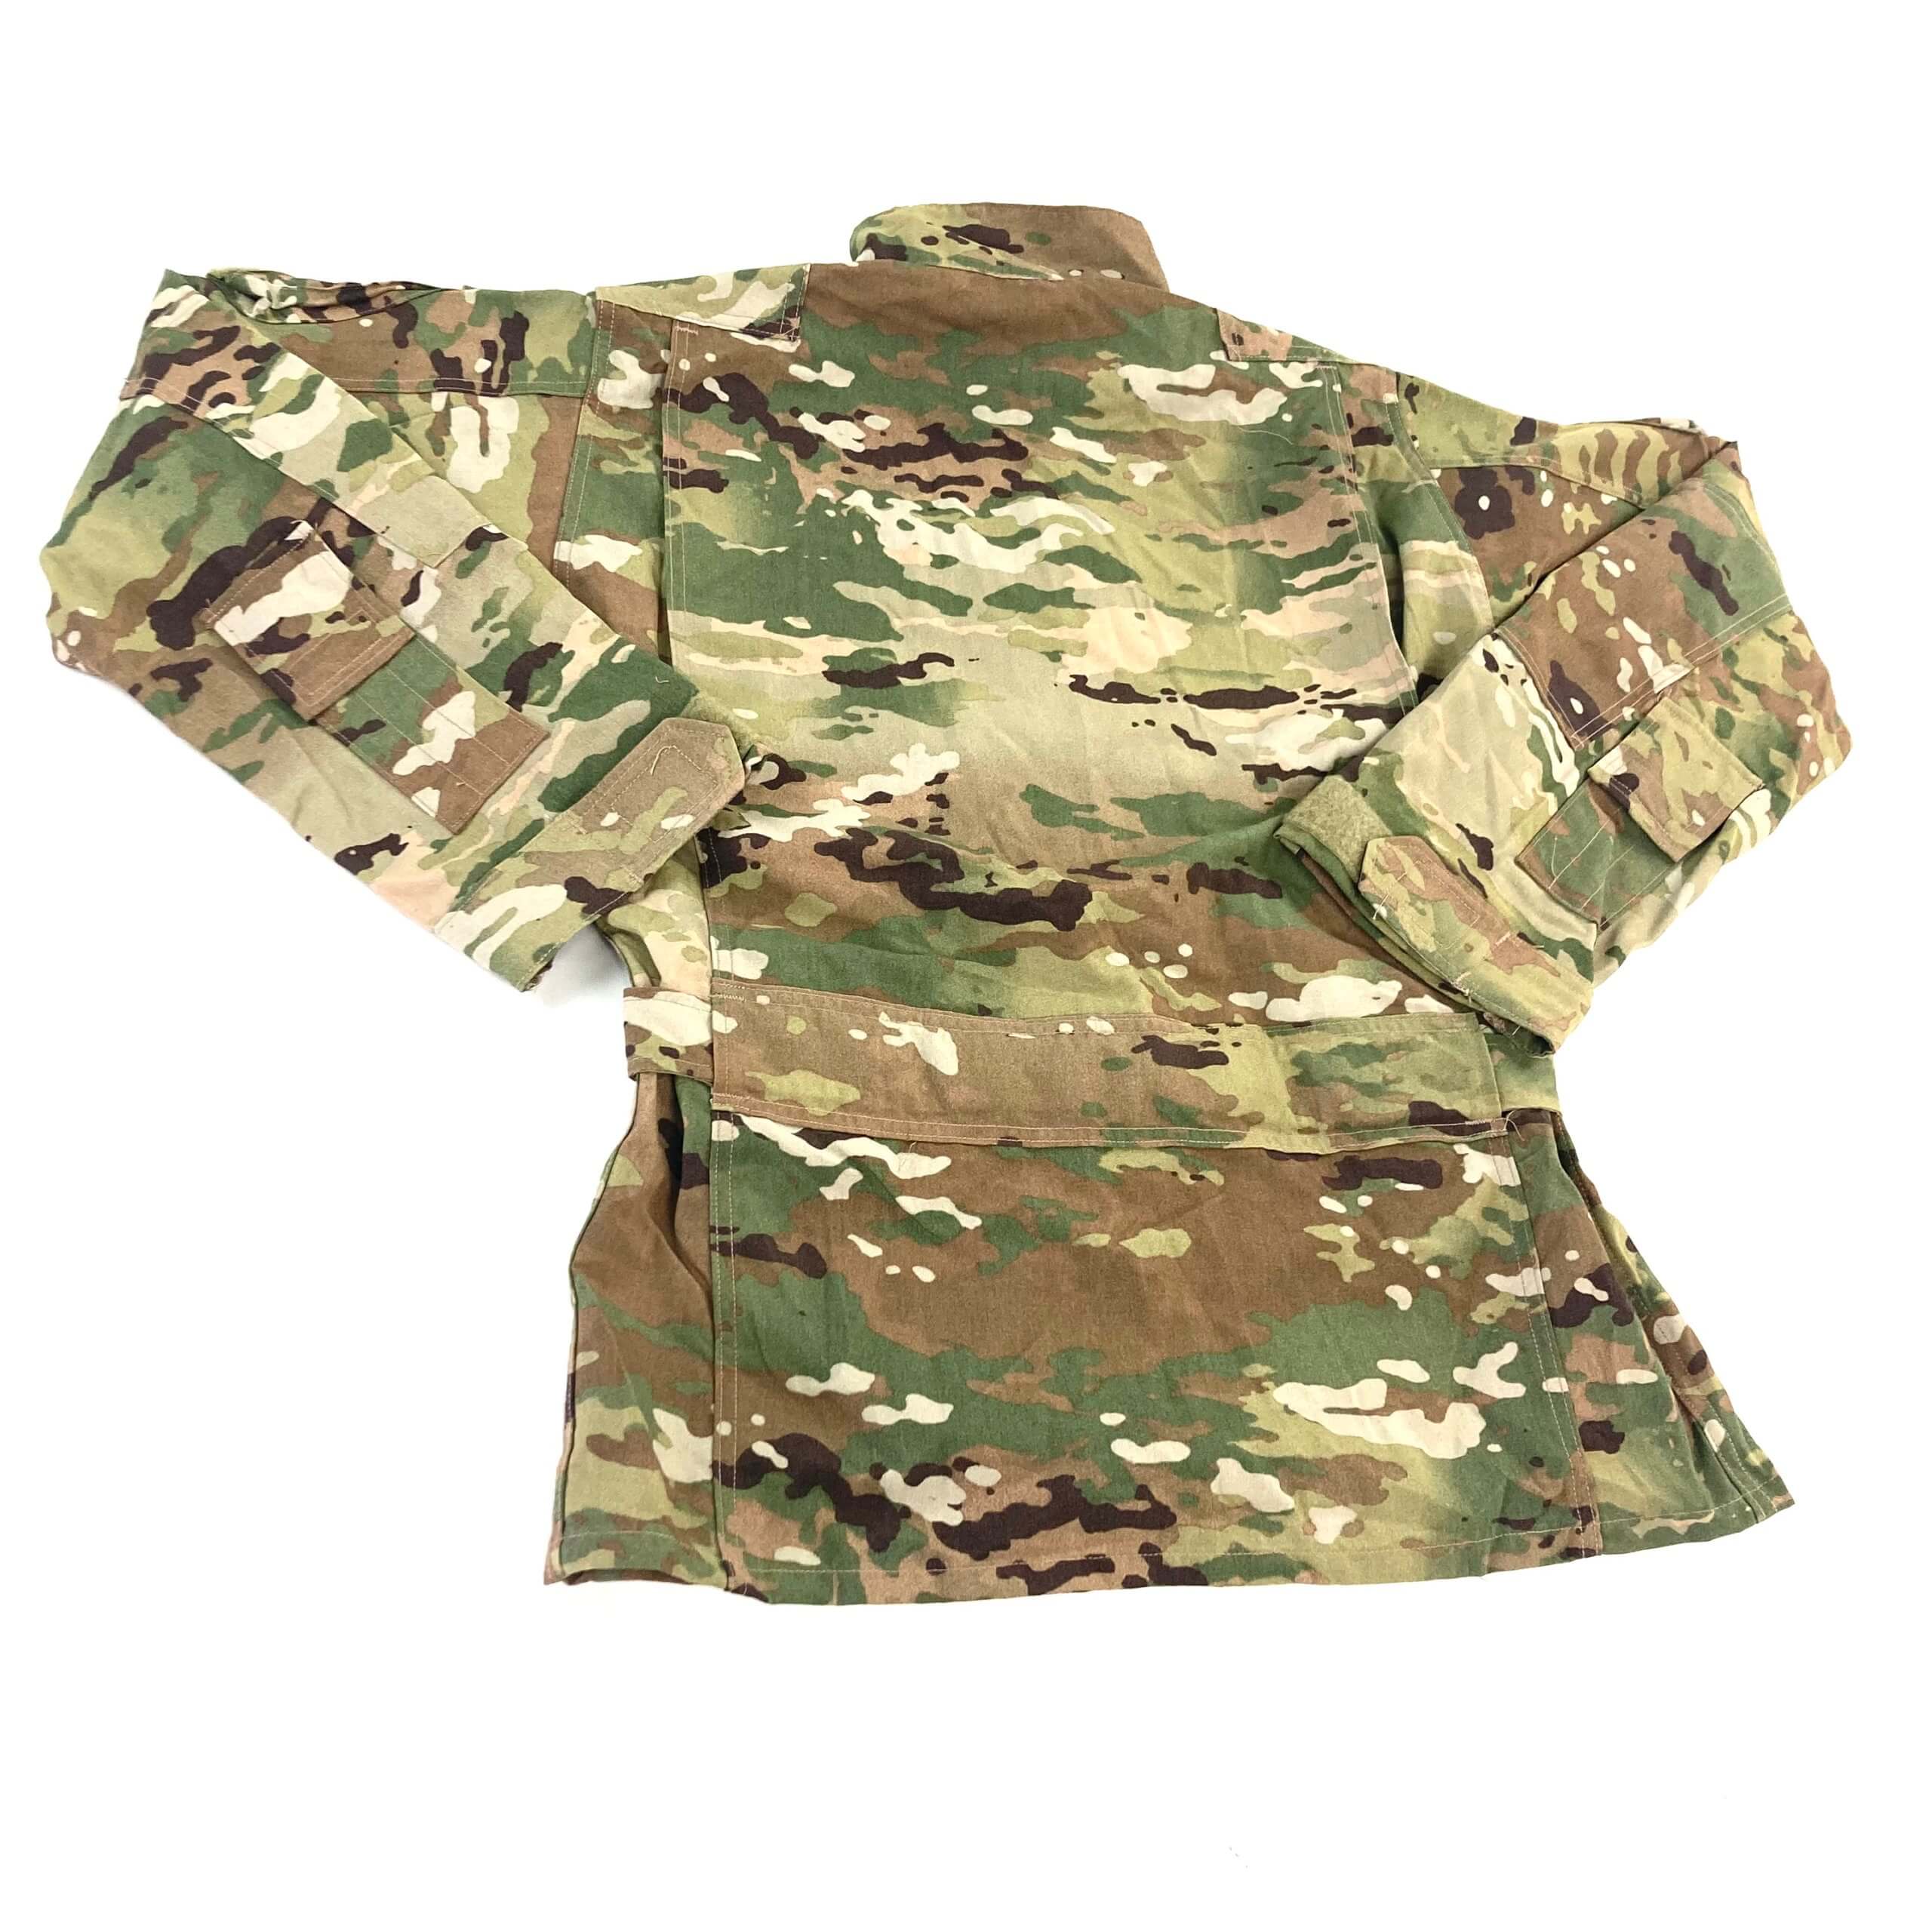 USGI Aircrew Combat Shirt